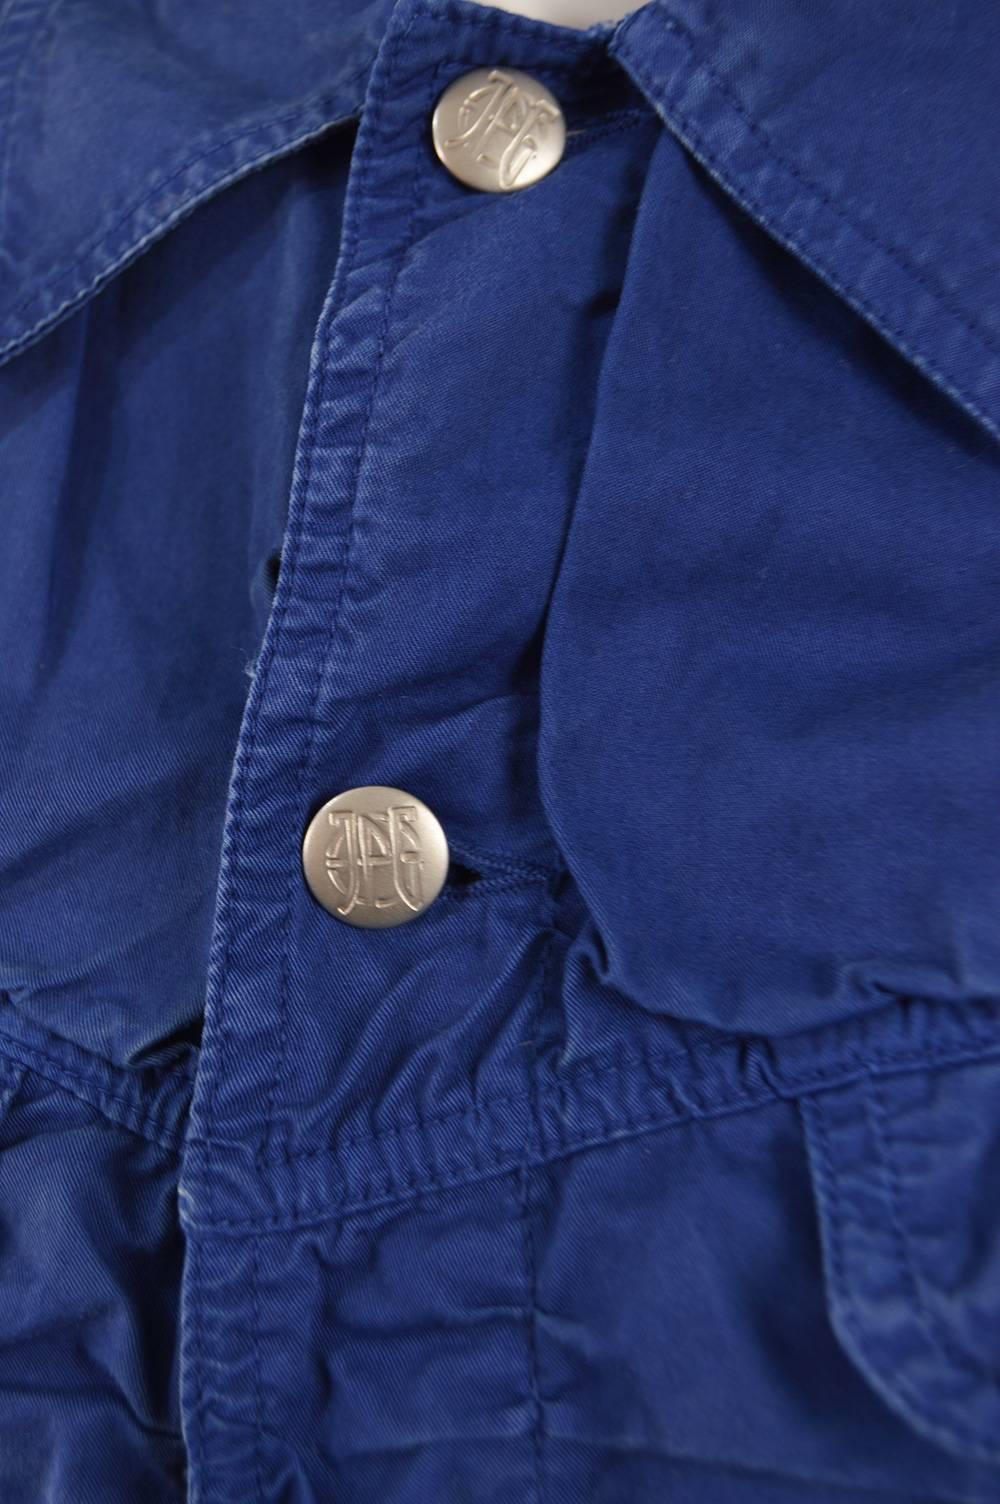 Jean Paul Gaultier Men's Vintage Ruched Blue Cotton Jacket, 1990s  For Sale 1